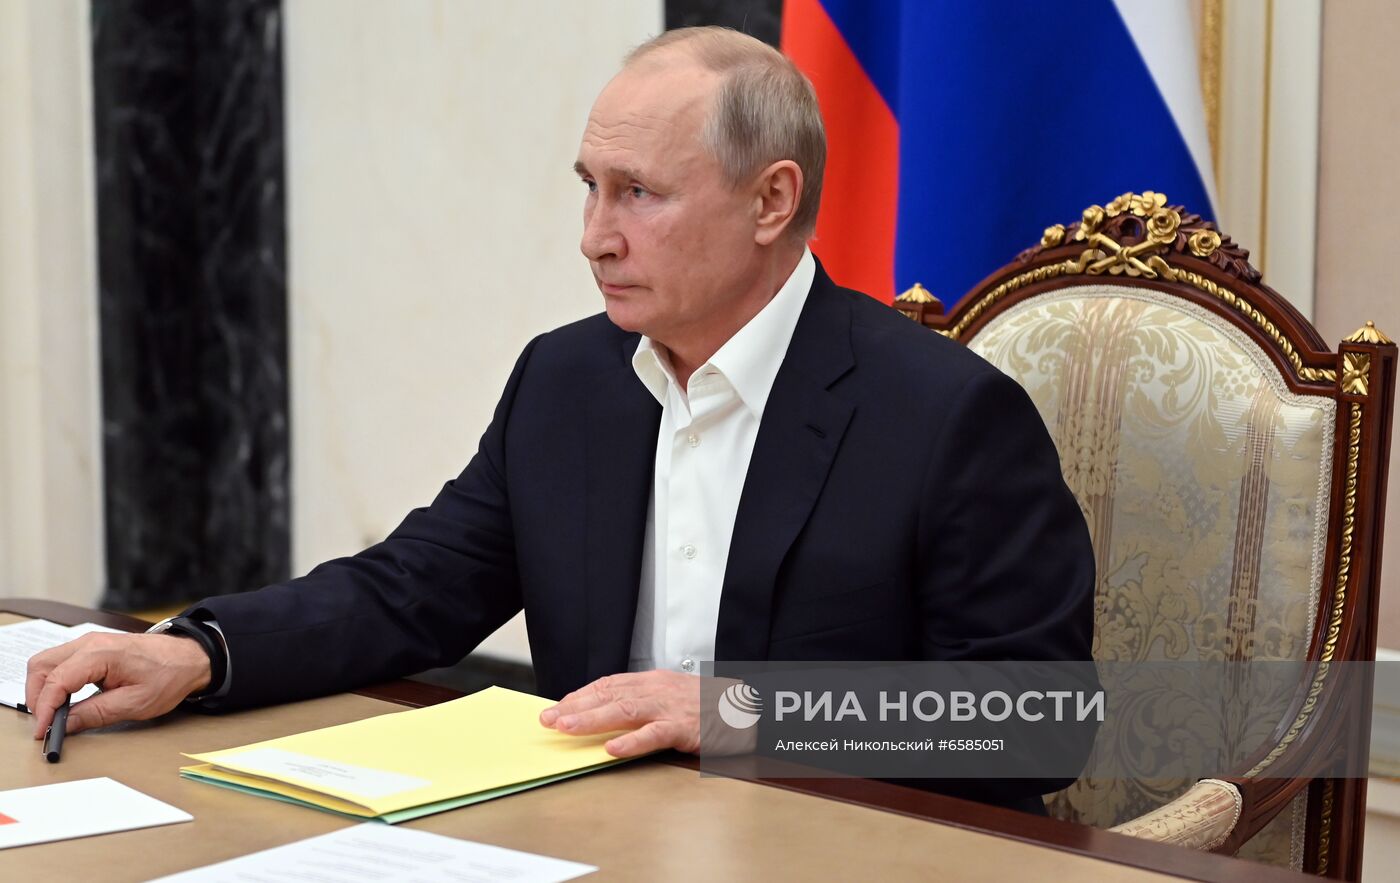 Президент РФ В. Путин провел совещание по подготовке специальной программы "Прямая линия с Владимиром Путиным"